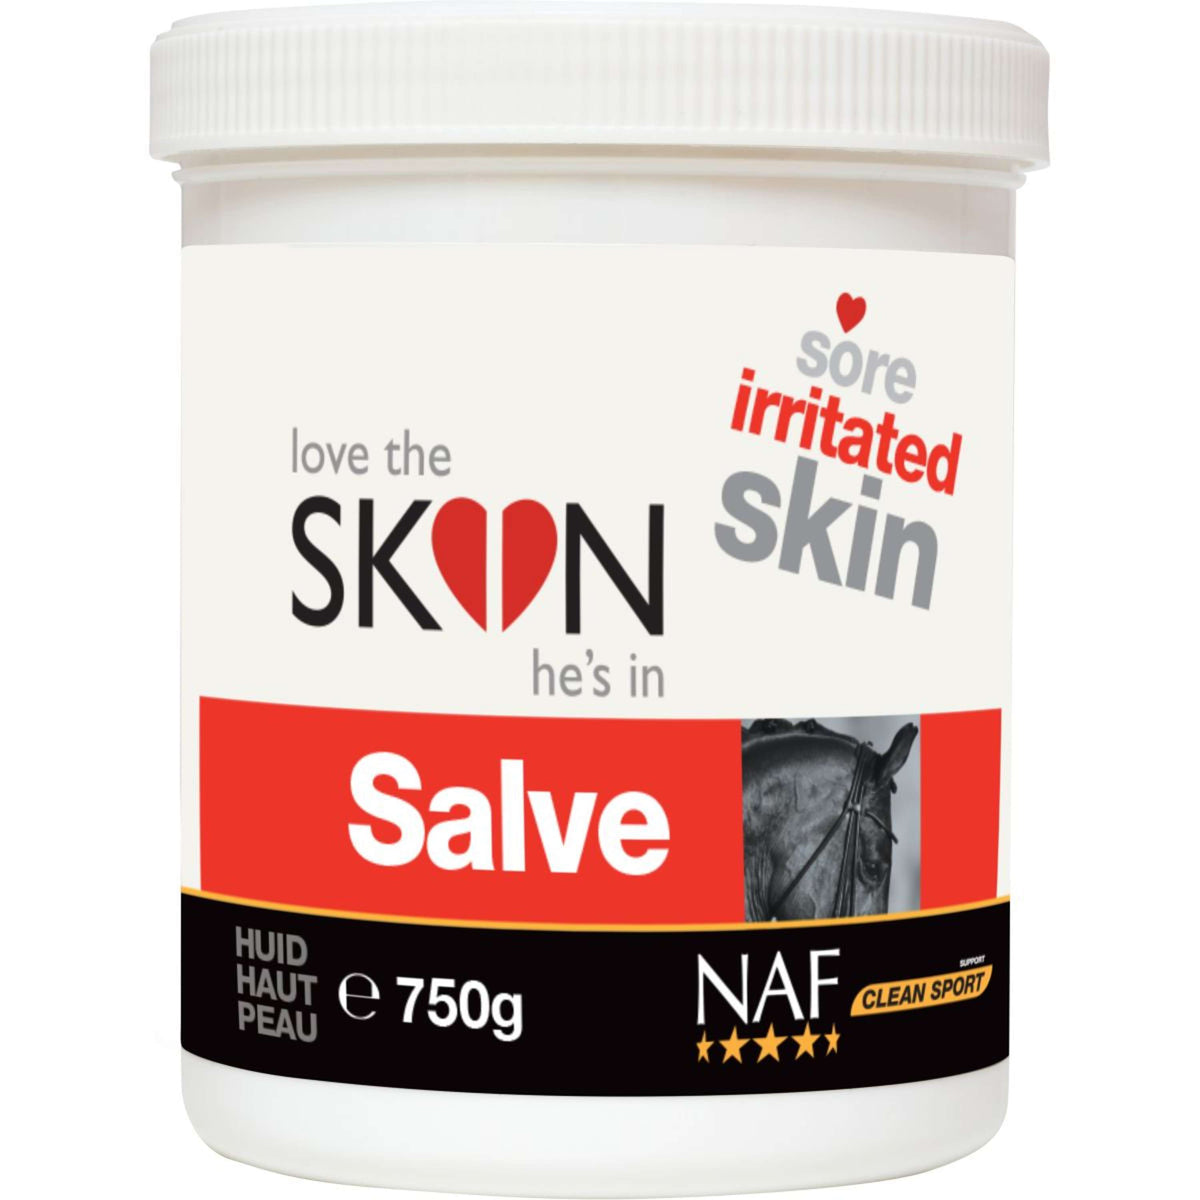 NAF Love the SKIN hes in Skin Salve